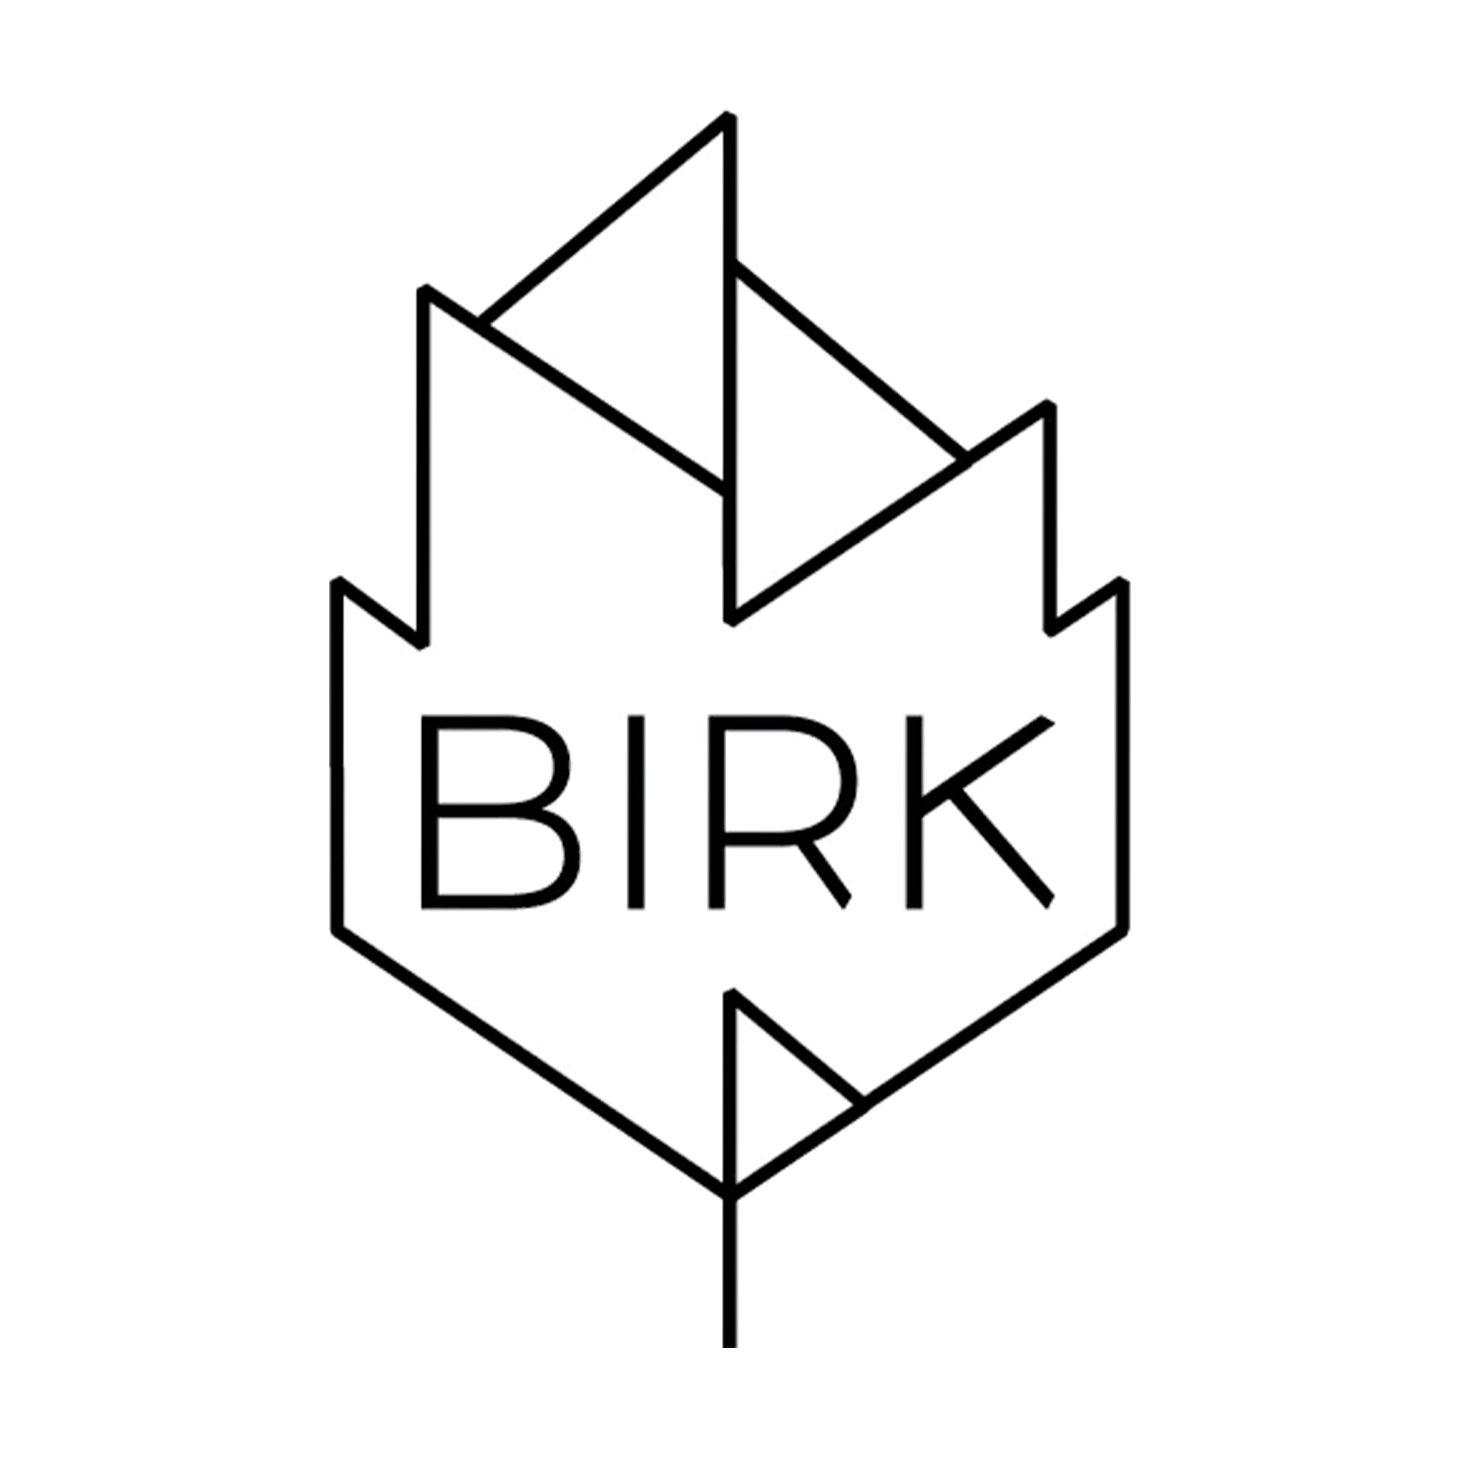 birk logo